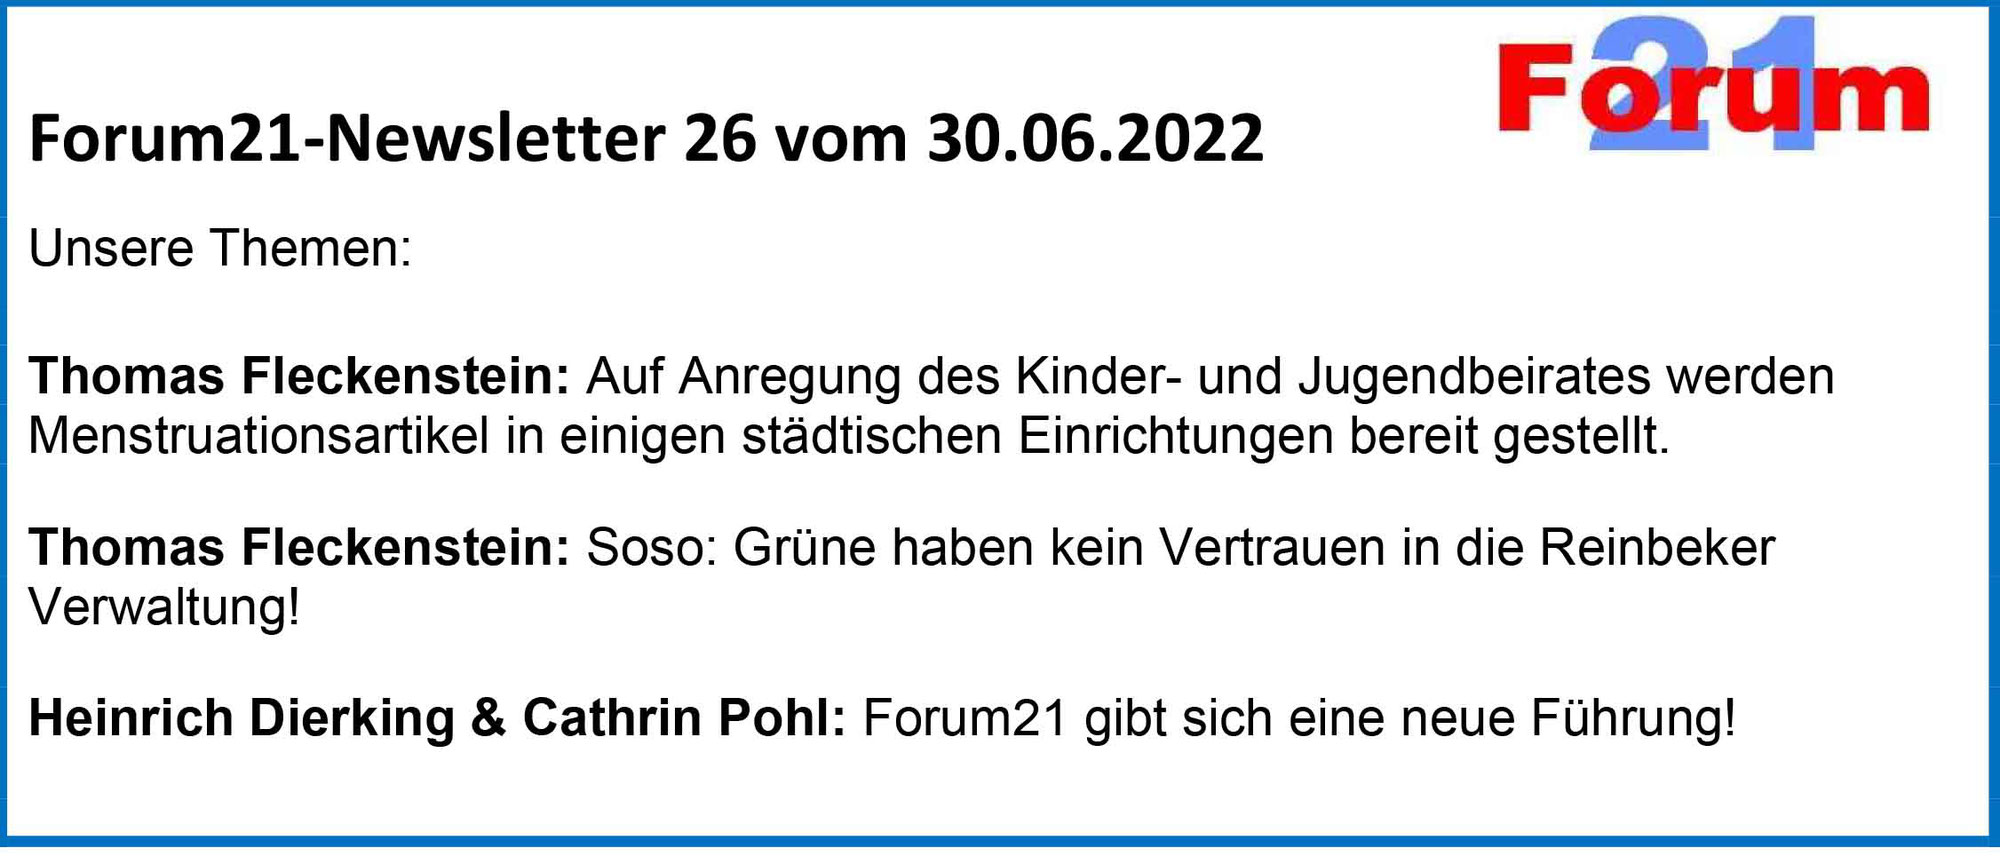 Forum21-Newsletter 26 vom 30.06.2022